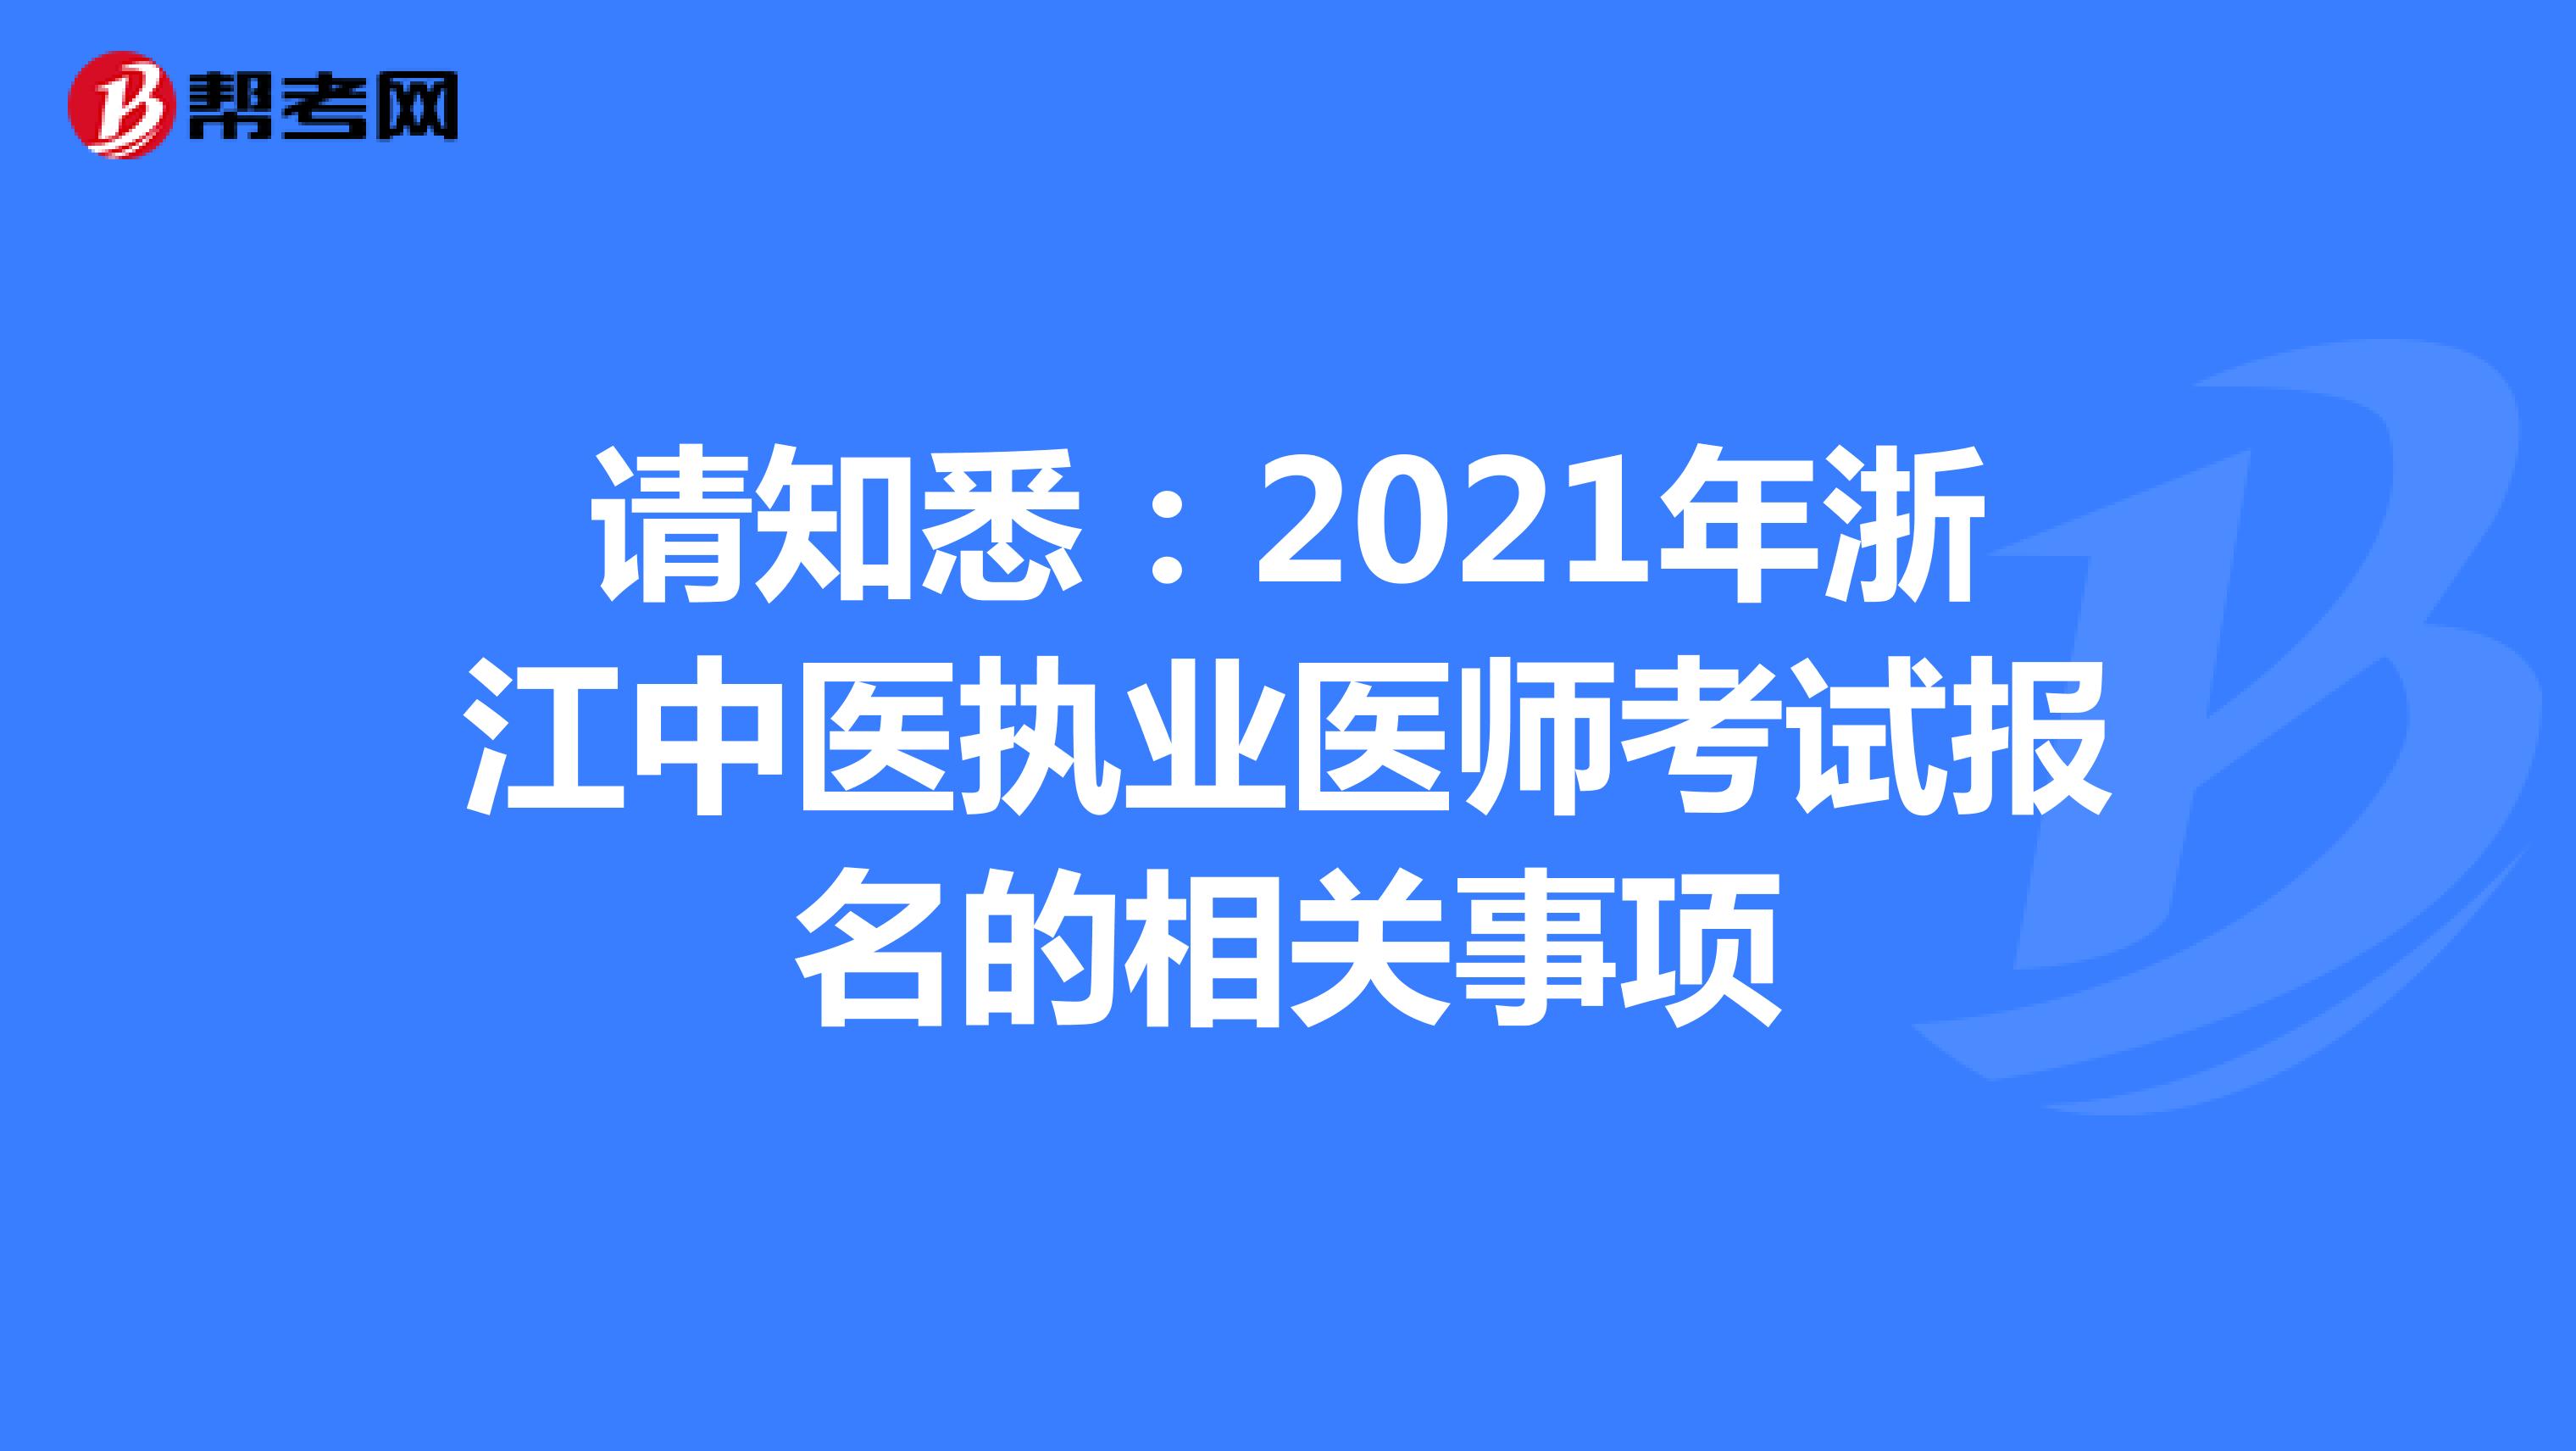 请知悉：2021年浙江中医执业医师考试报名的相关事项